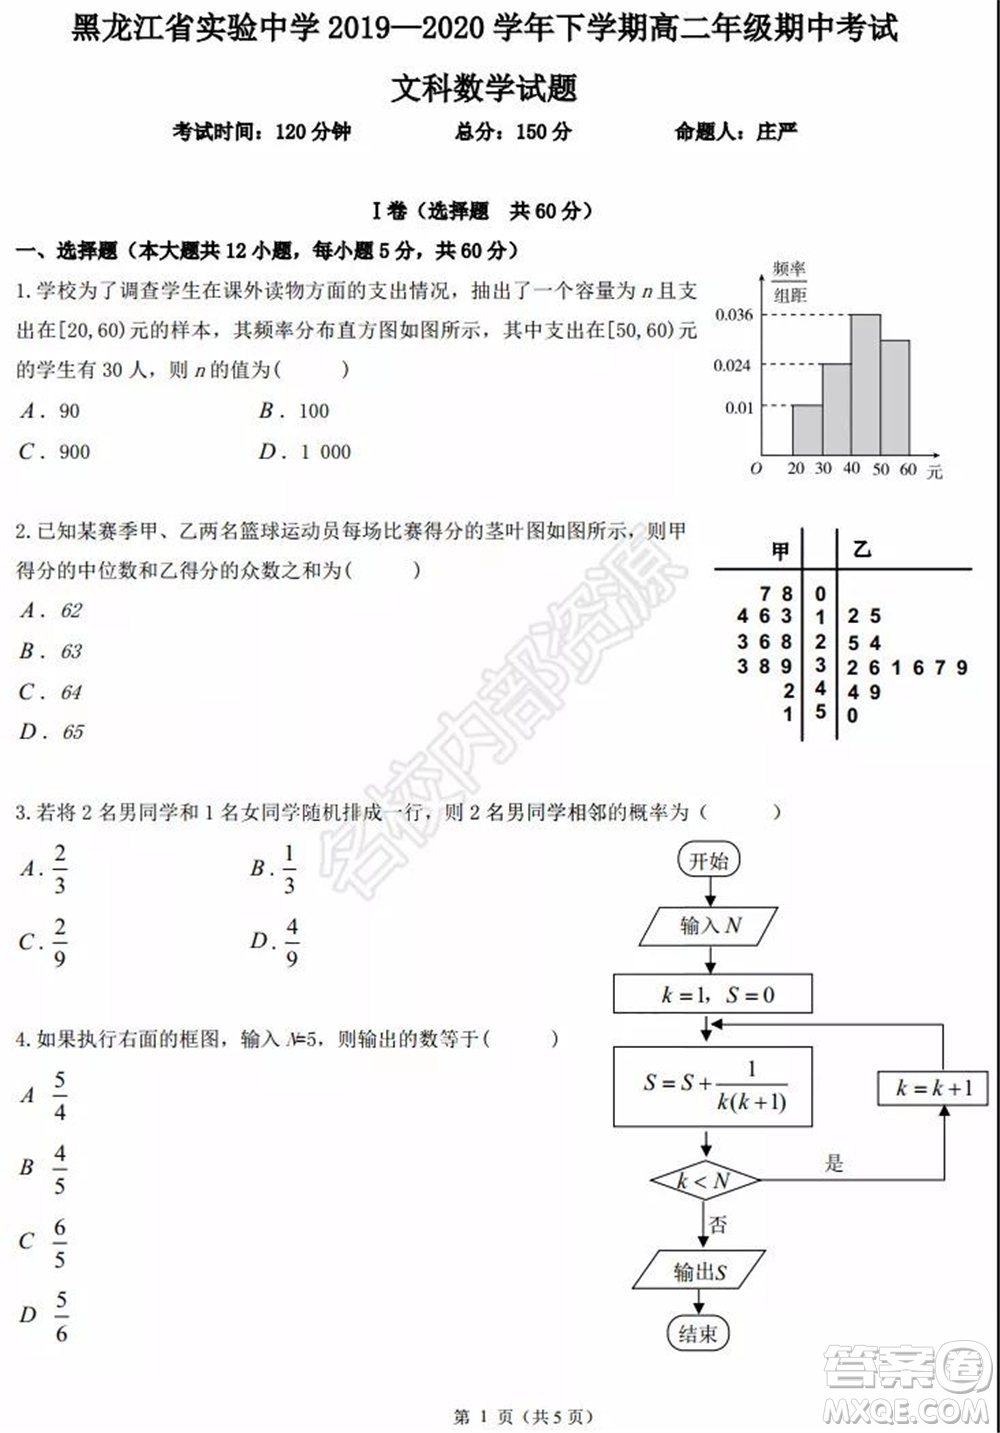 黑龙江省实验中学2019-2020学年下学期高二年级期中考试文科数学试卷及答案